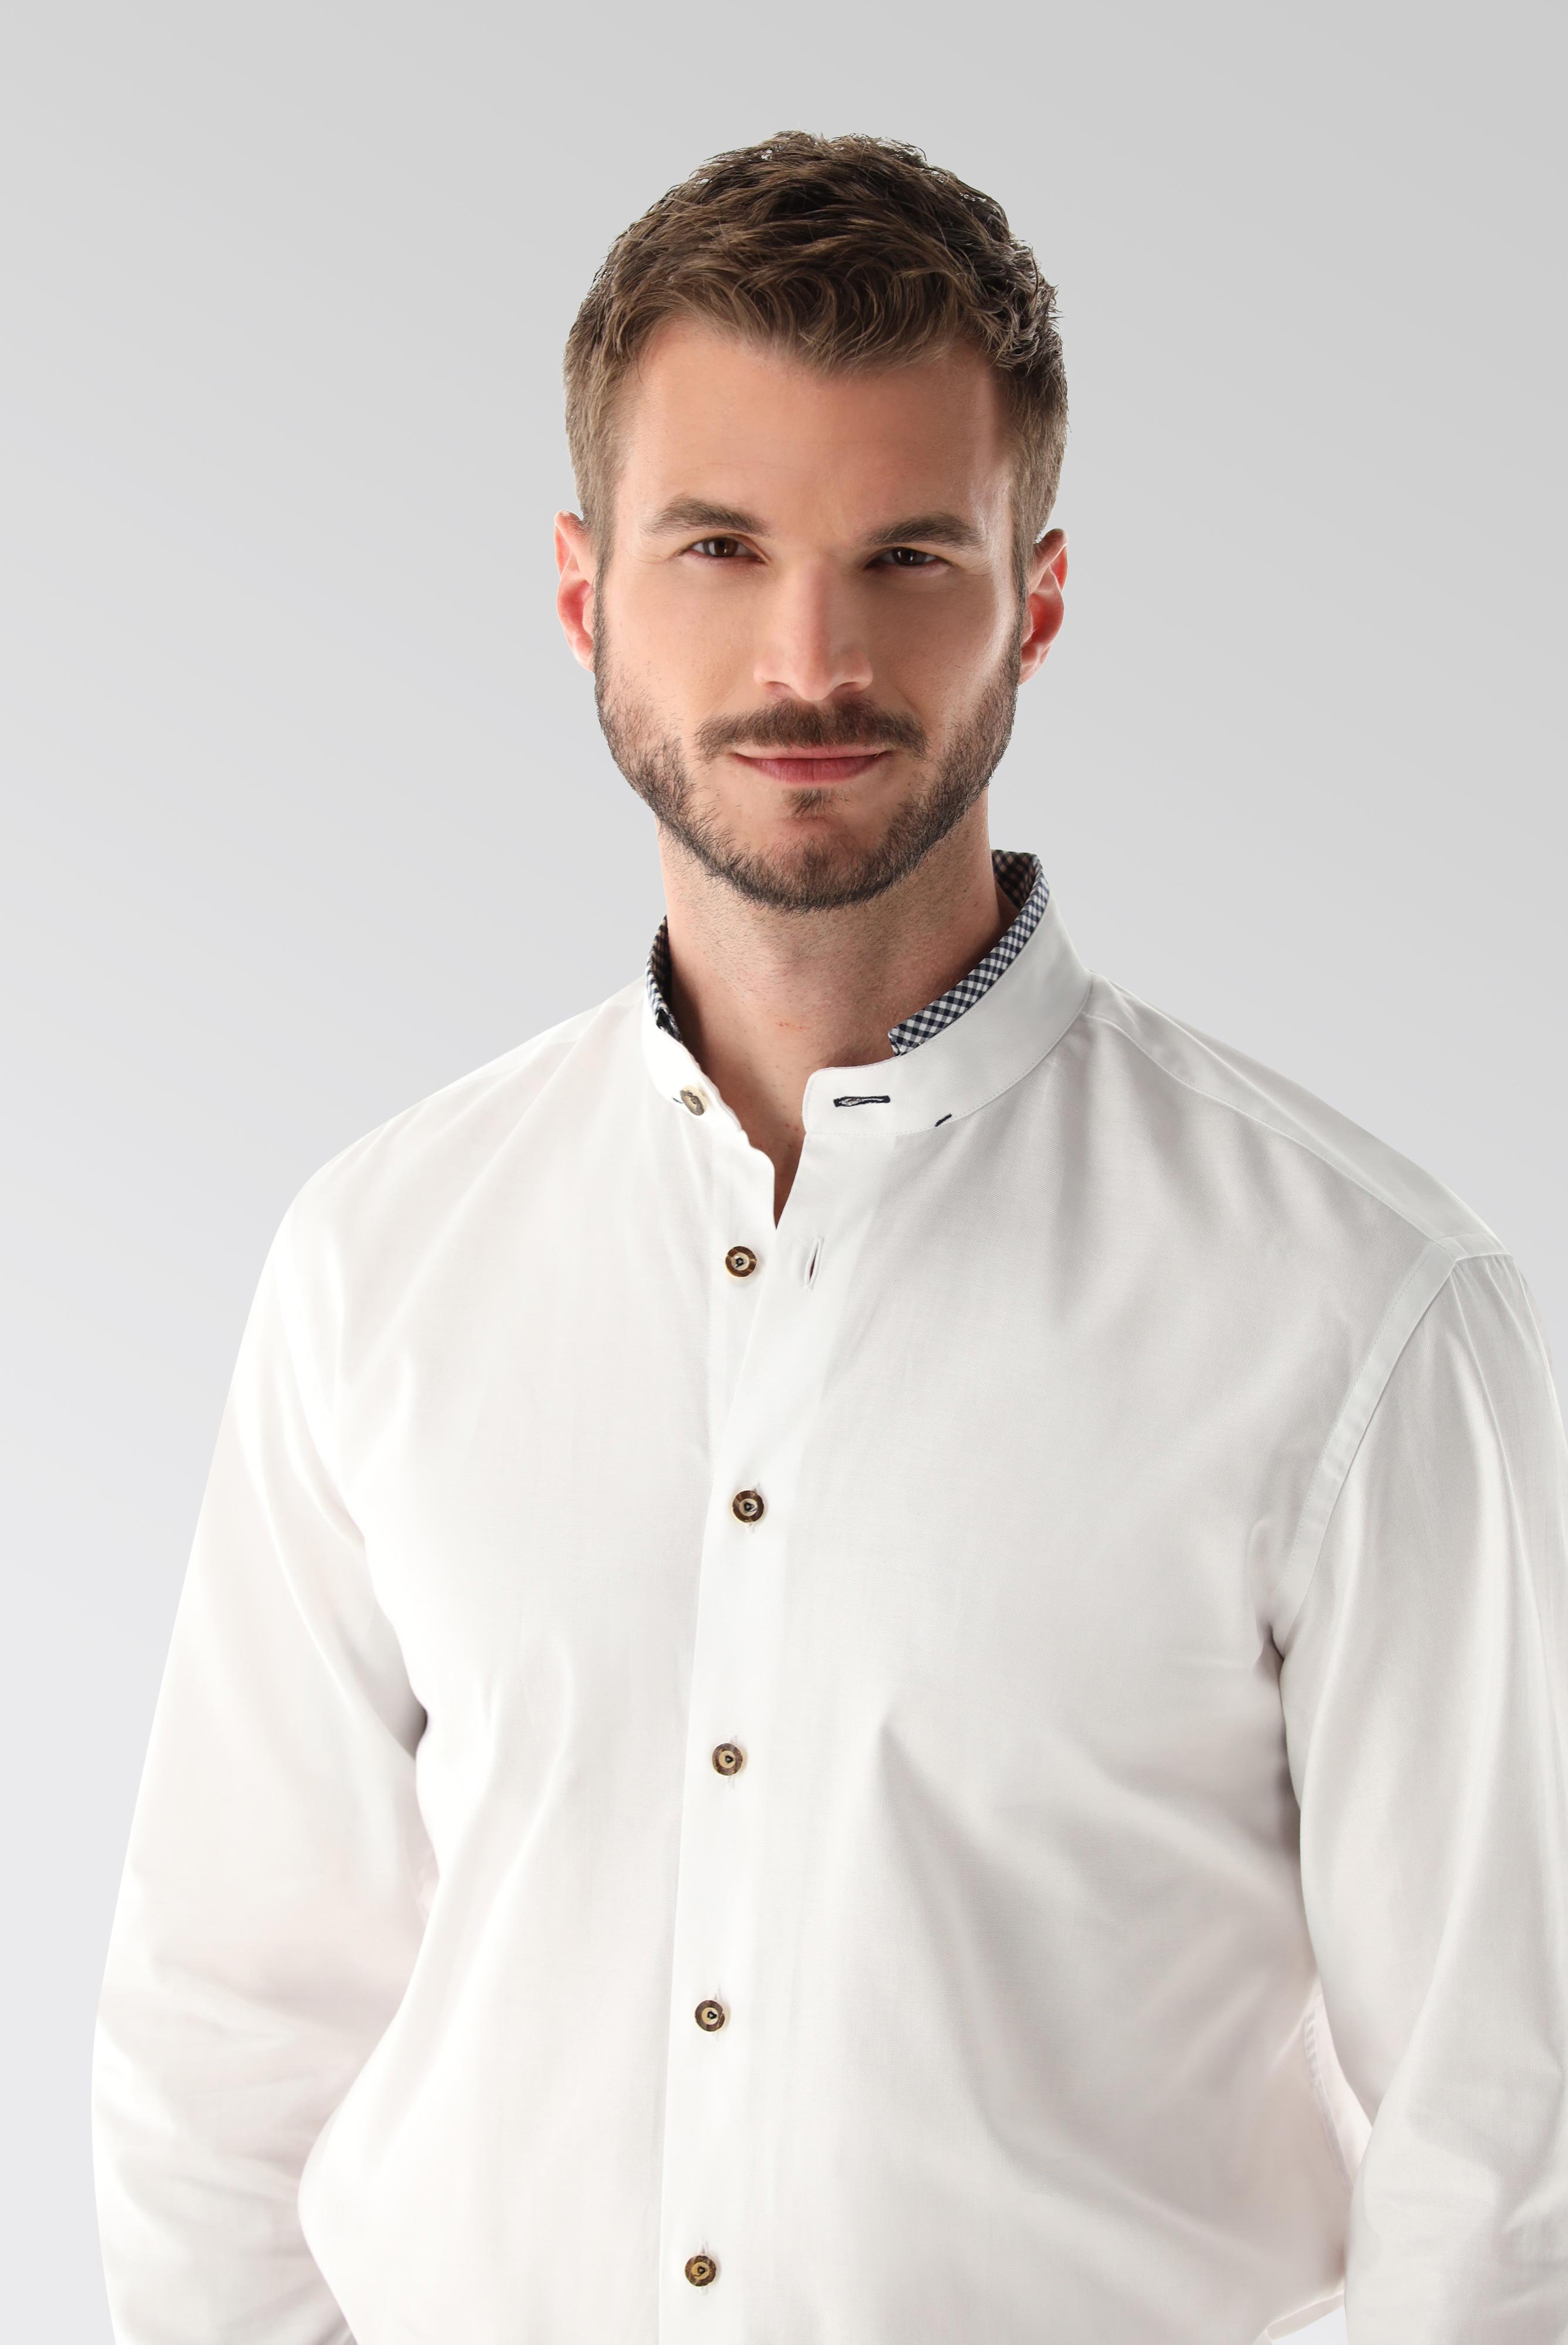 Festliche Hemden+Oxford Trachtenhemd mit Farbdetail Tailor Fit+20.2081.8Q.150251.007.39